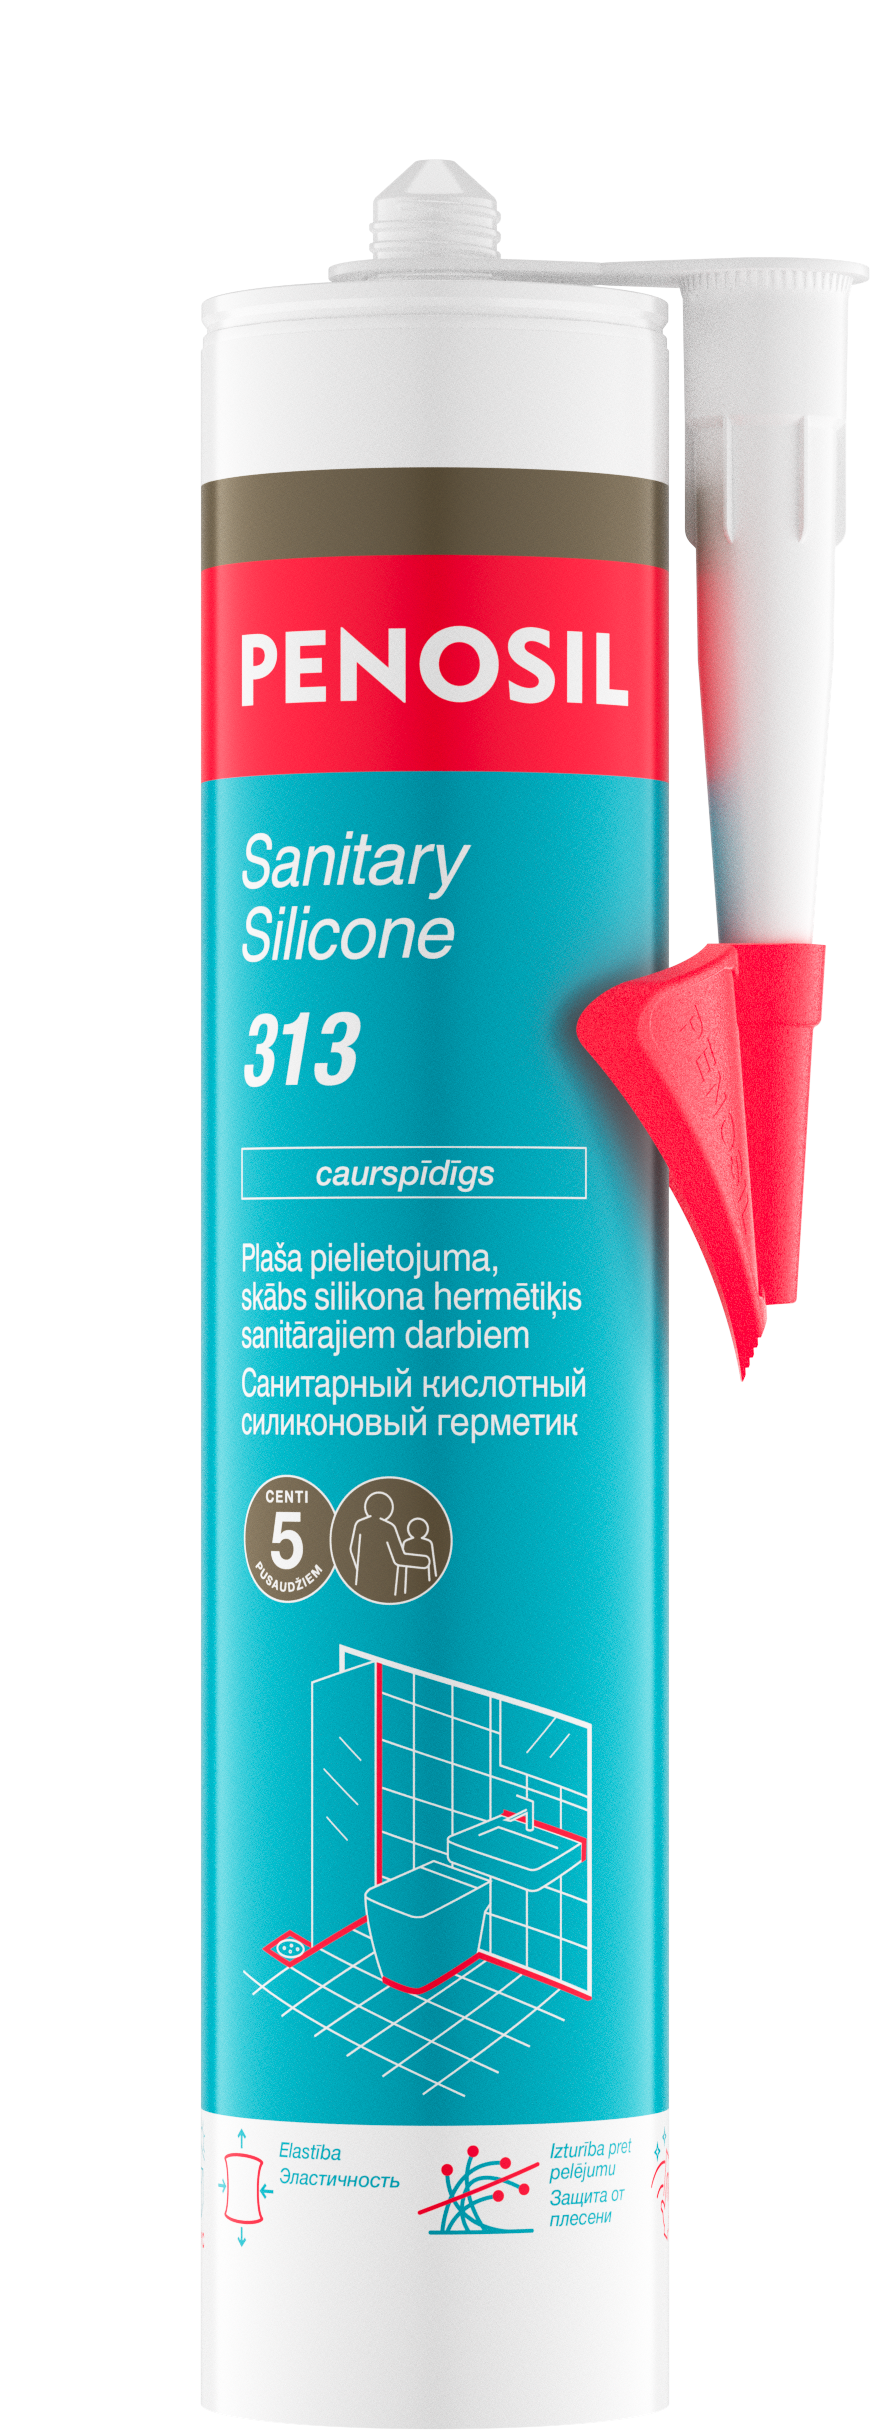 PENOSIL Sanitary Silicone 313 sanitārais silikona hermētiķis 